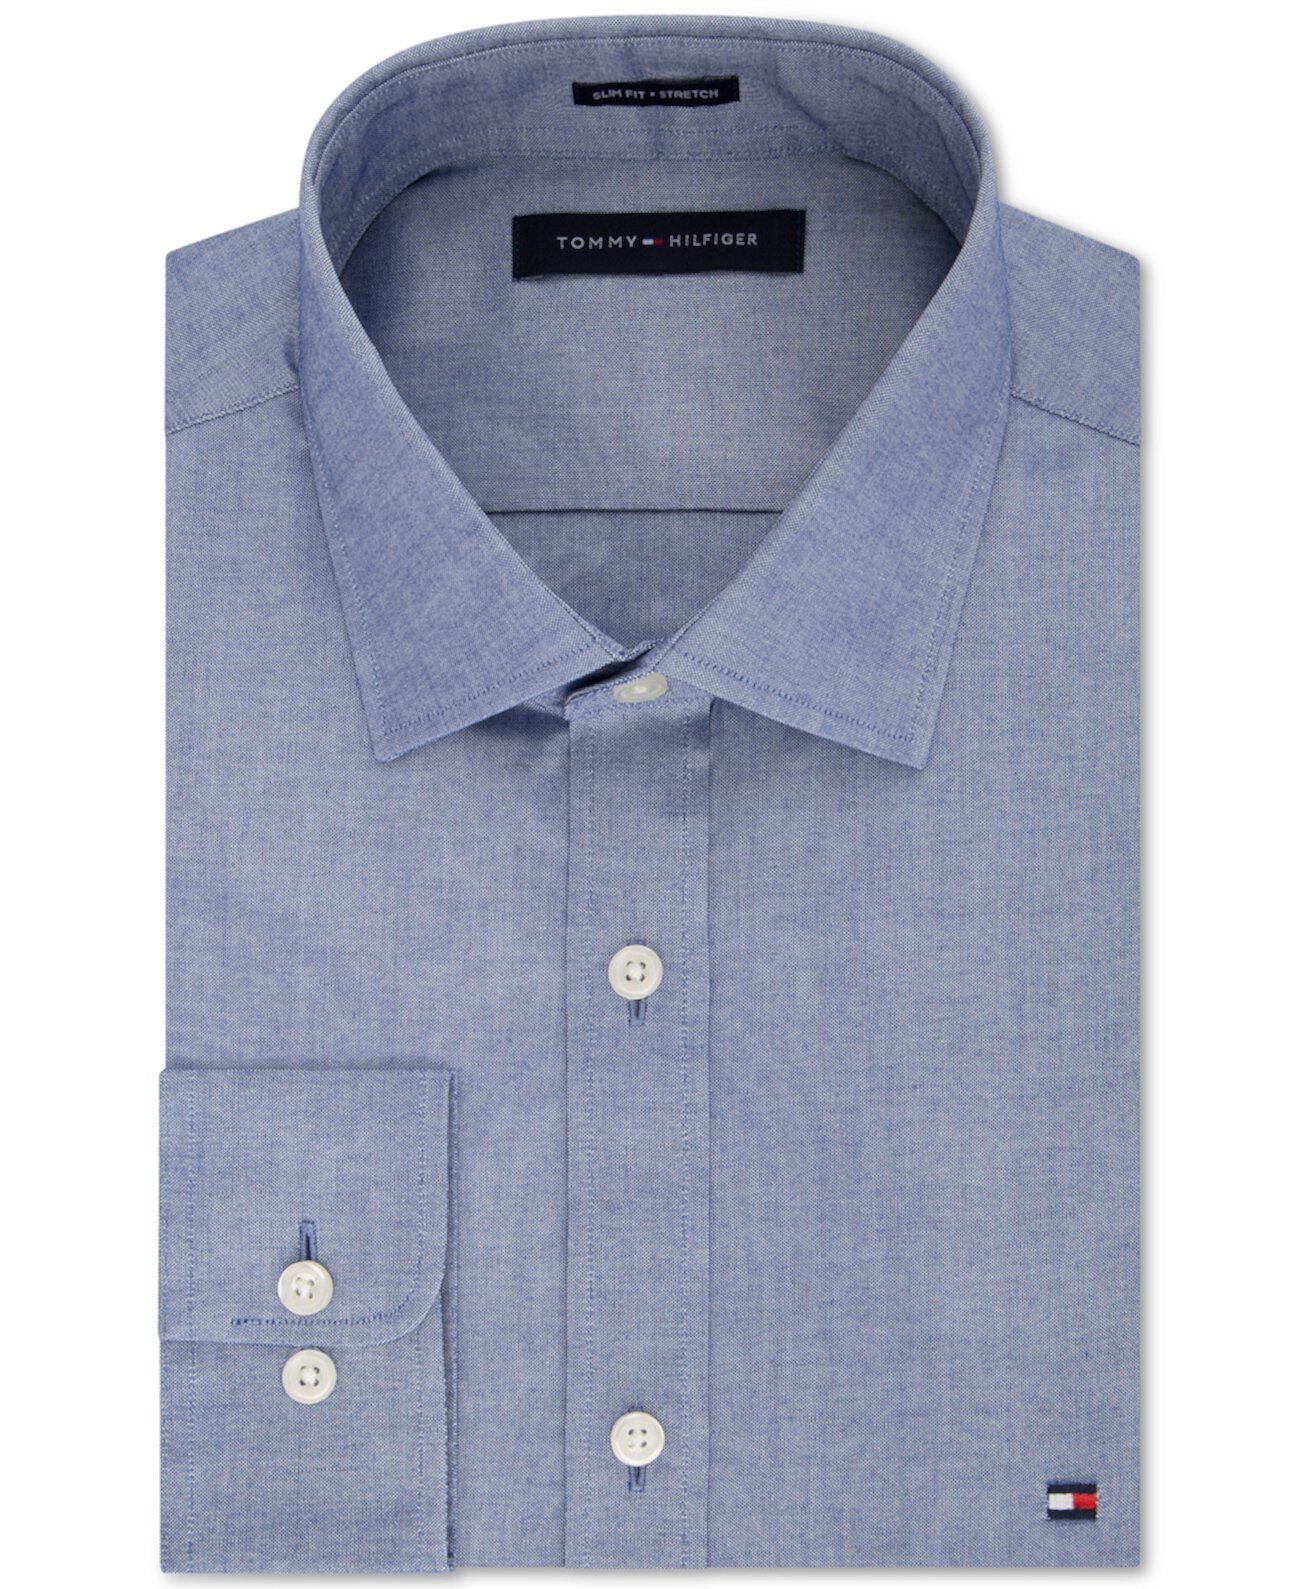 Мужская приталенная эластичная однотонная рубашка, эксклюзивно в Интернете, создана для Macy's Tommy Hilfiger